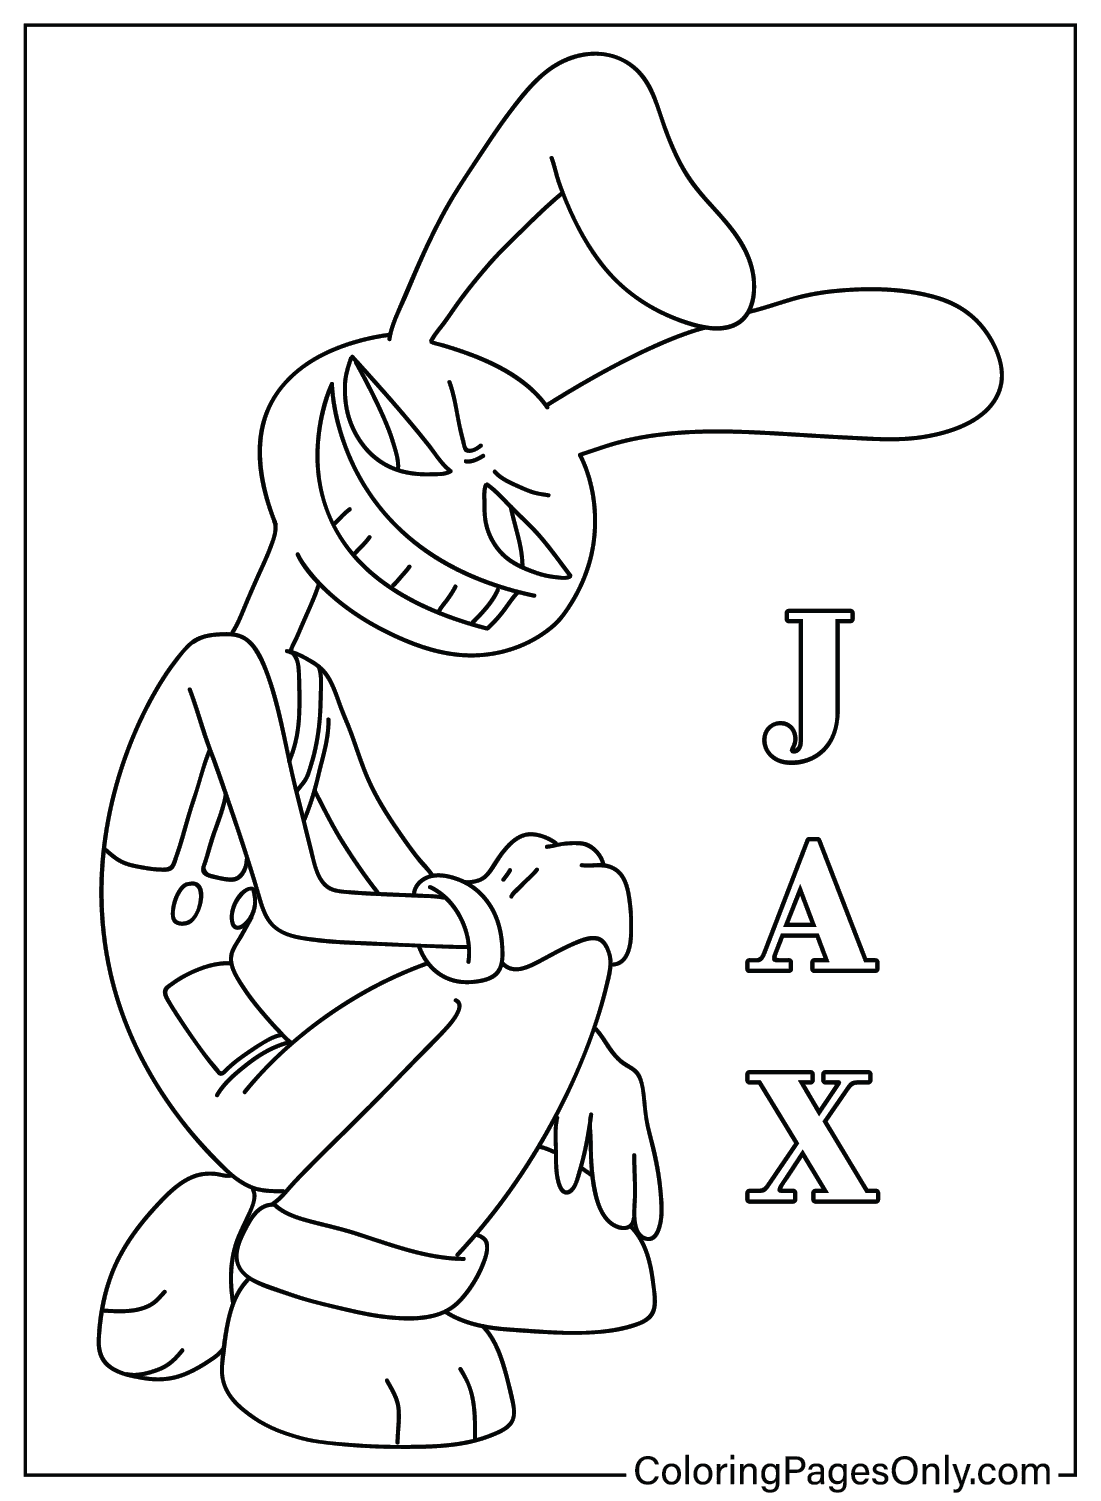 Desenho para colorir Jax de Jax